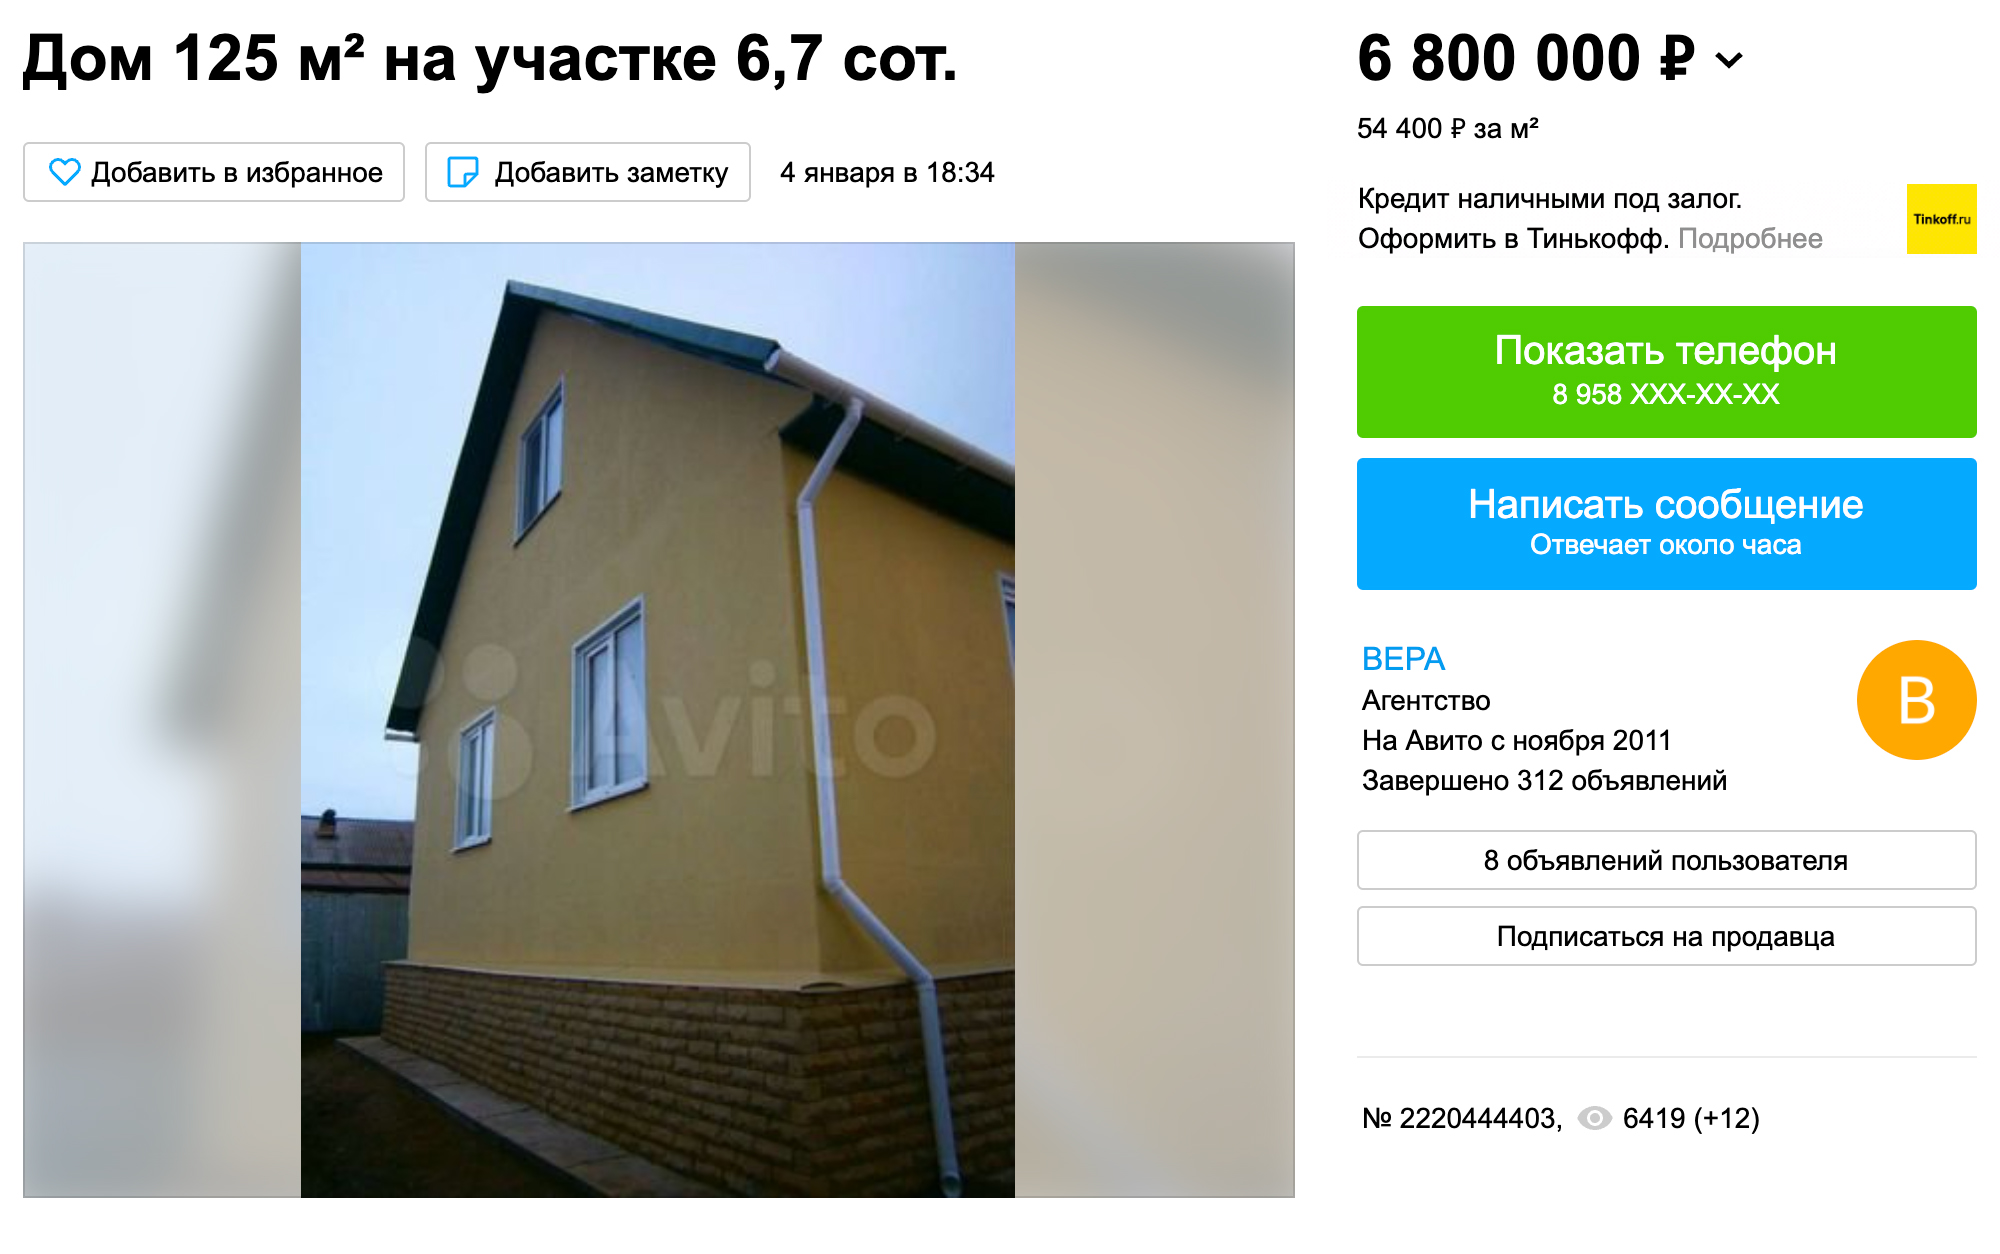 В Комсомольском районе дома в среднем стоят от 6 млн рублей